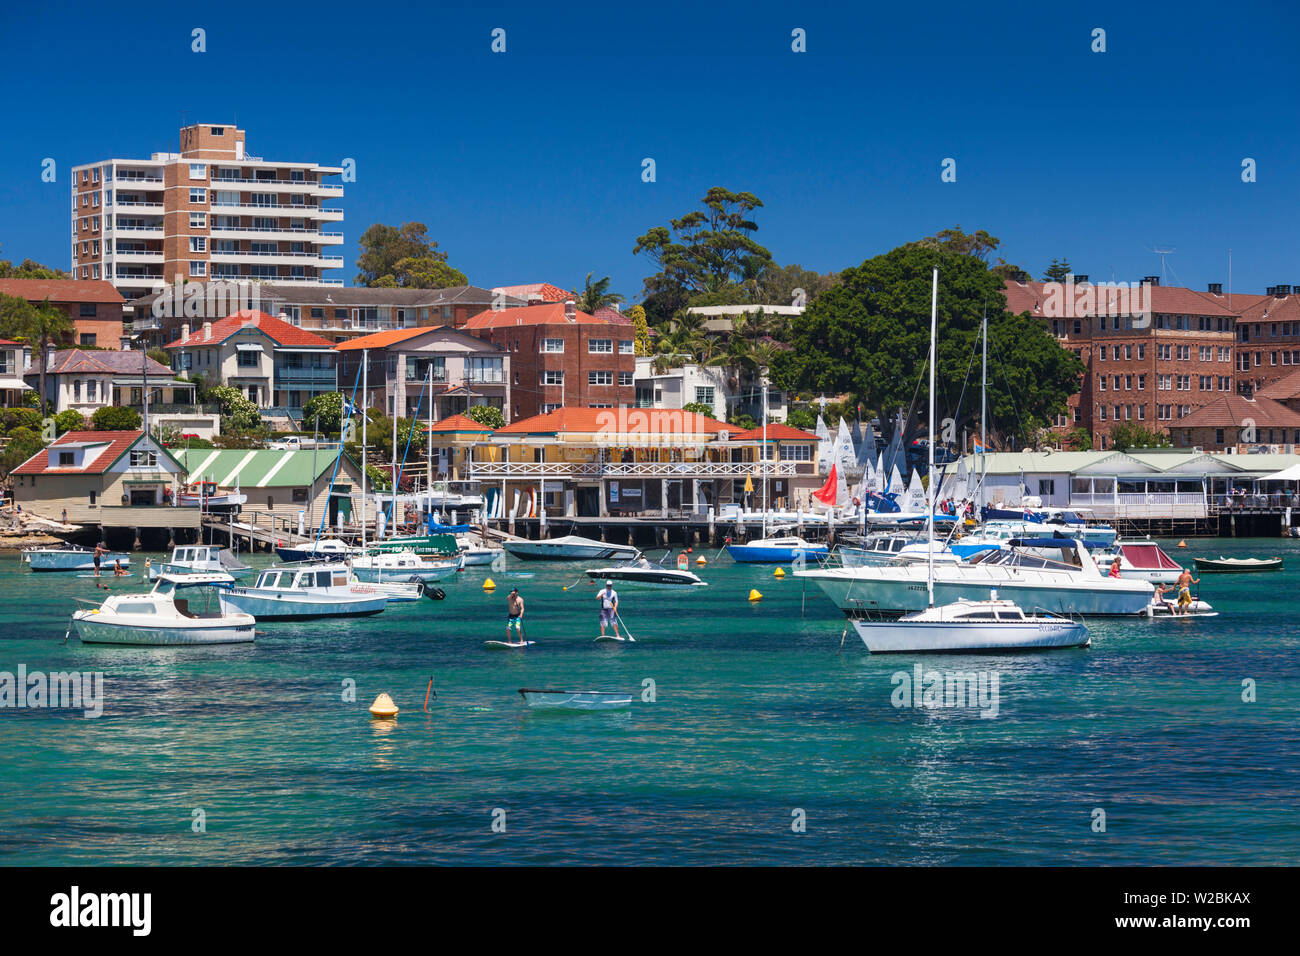 Australia, Nueva Gales del Sur, Nueva Gales del Sur, Sydney Manly, Manly Cove Foto de stock